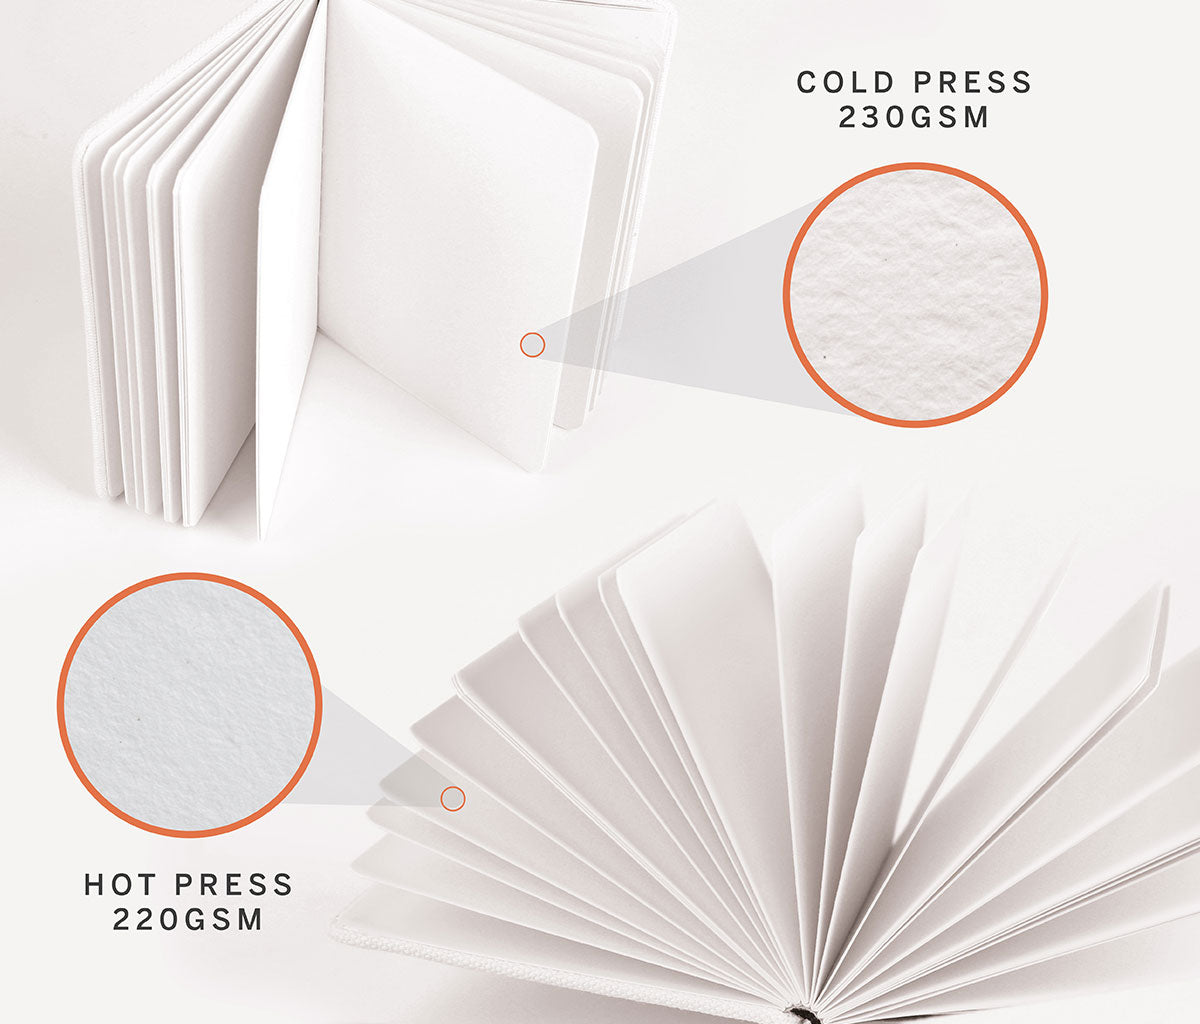 Etchr Mixed Media Hardbound Sketchbook - A5, 5.8 x 8.3 Cold Press, Landscape